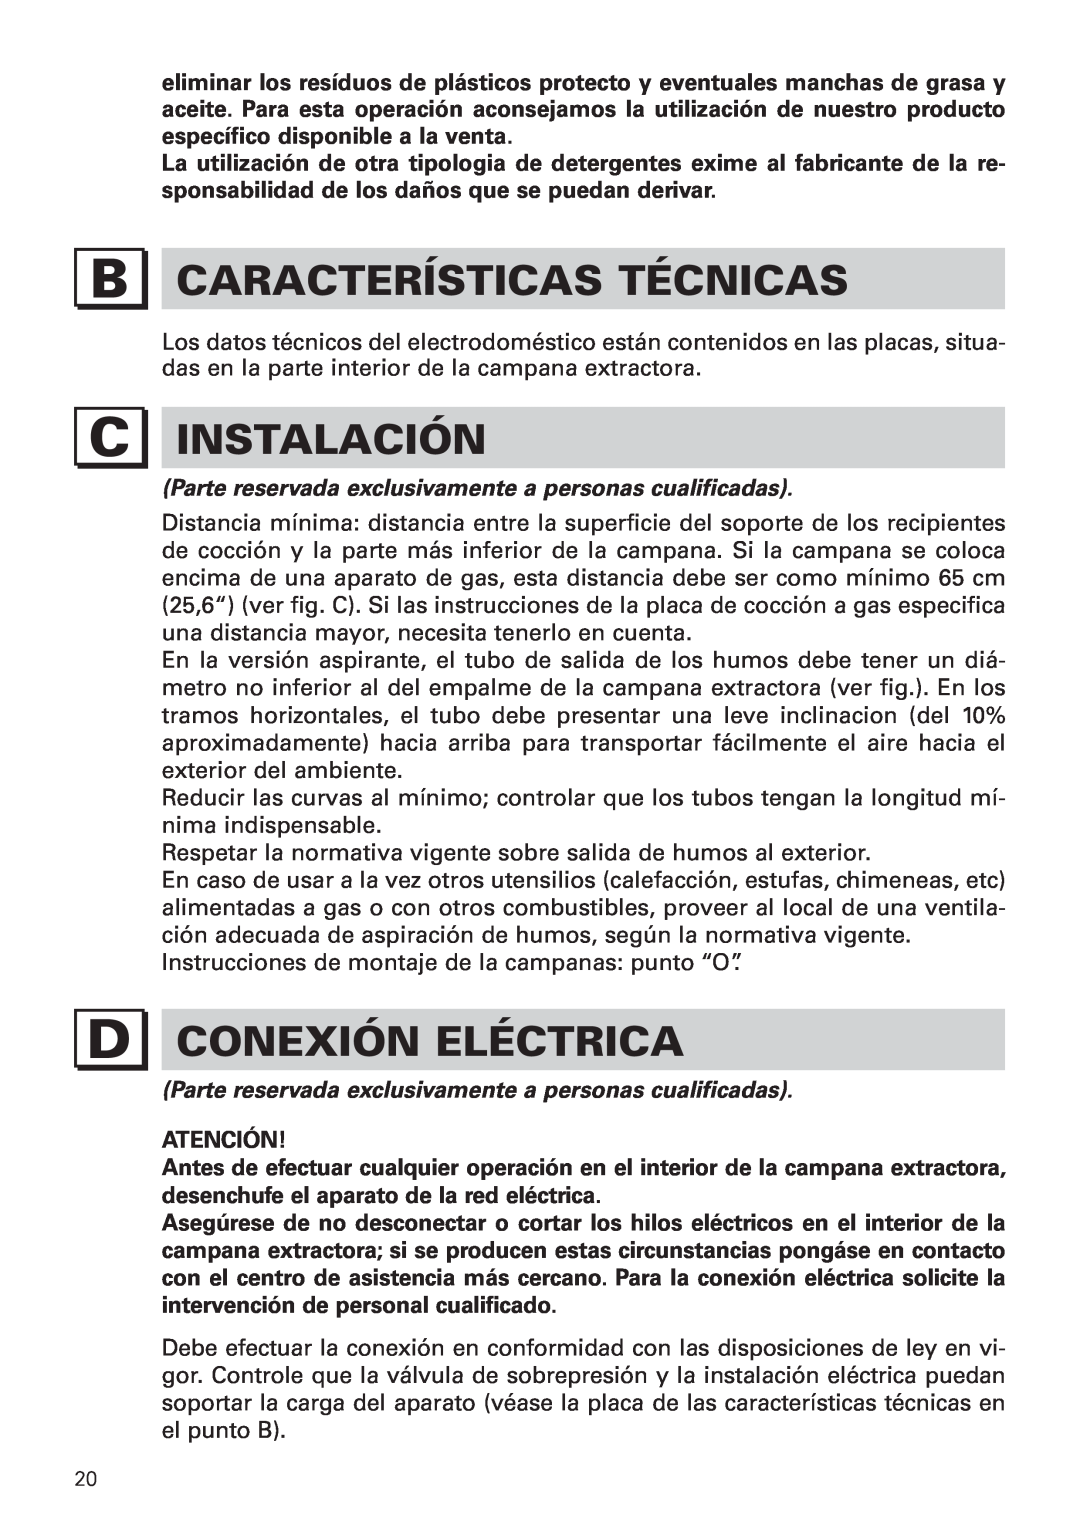 Bertazzoni KIN 36 PRO X manual Características Técnicas, Instalación, Conexión Eléctrica 